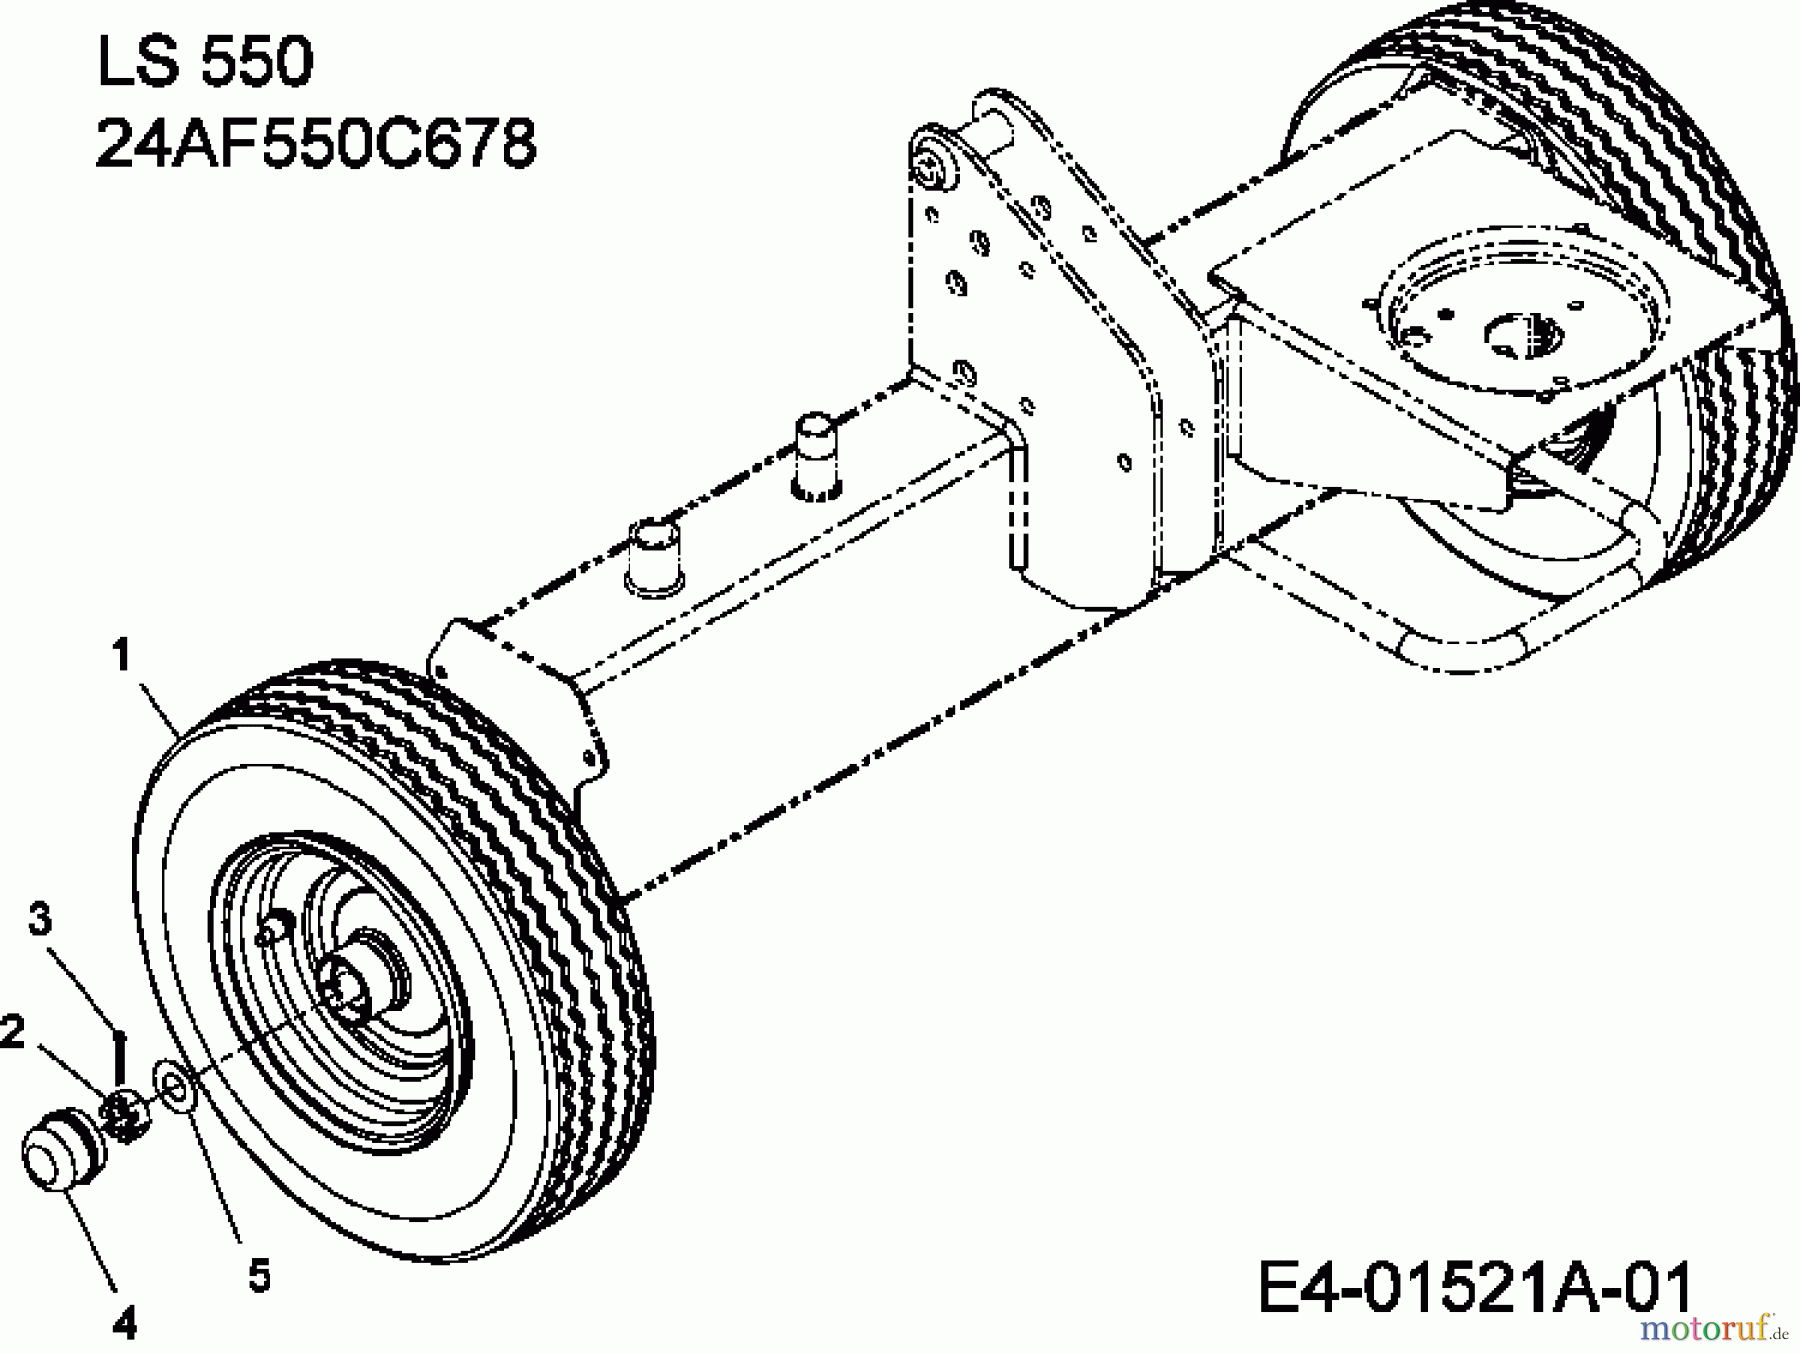  MTD Log splitter LS 550 24AF550C678  (2013) Wheels